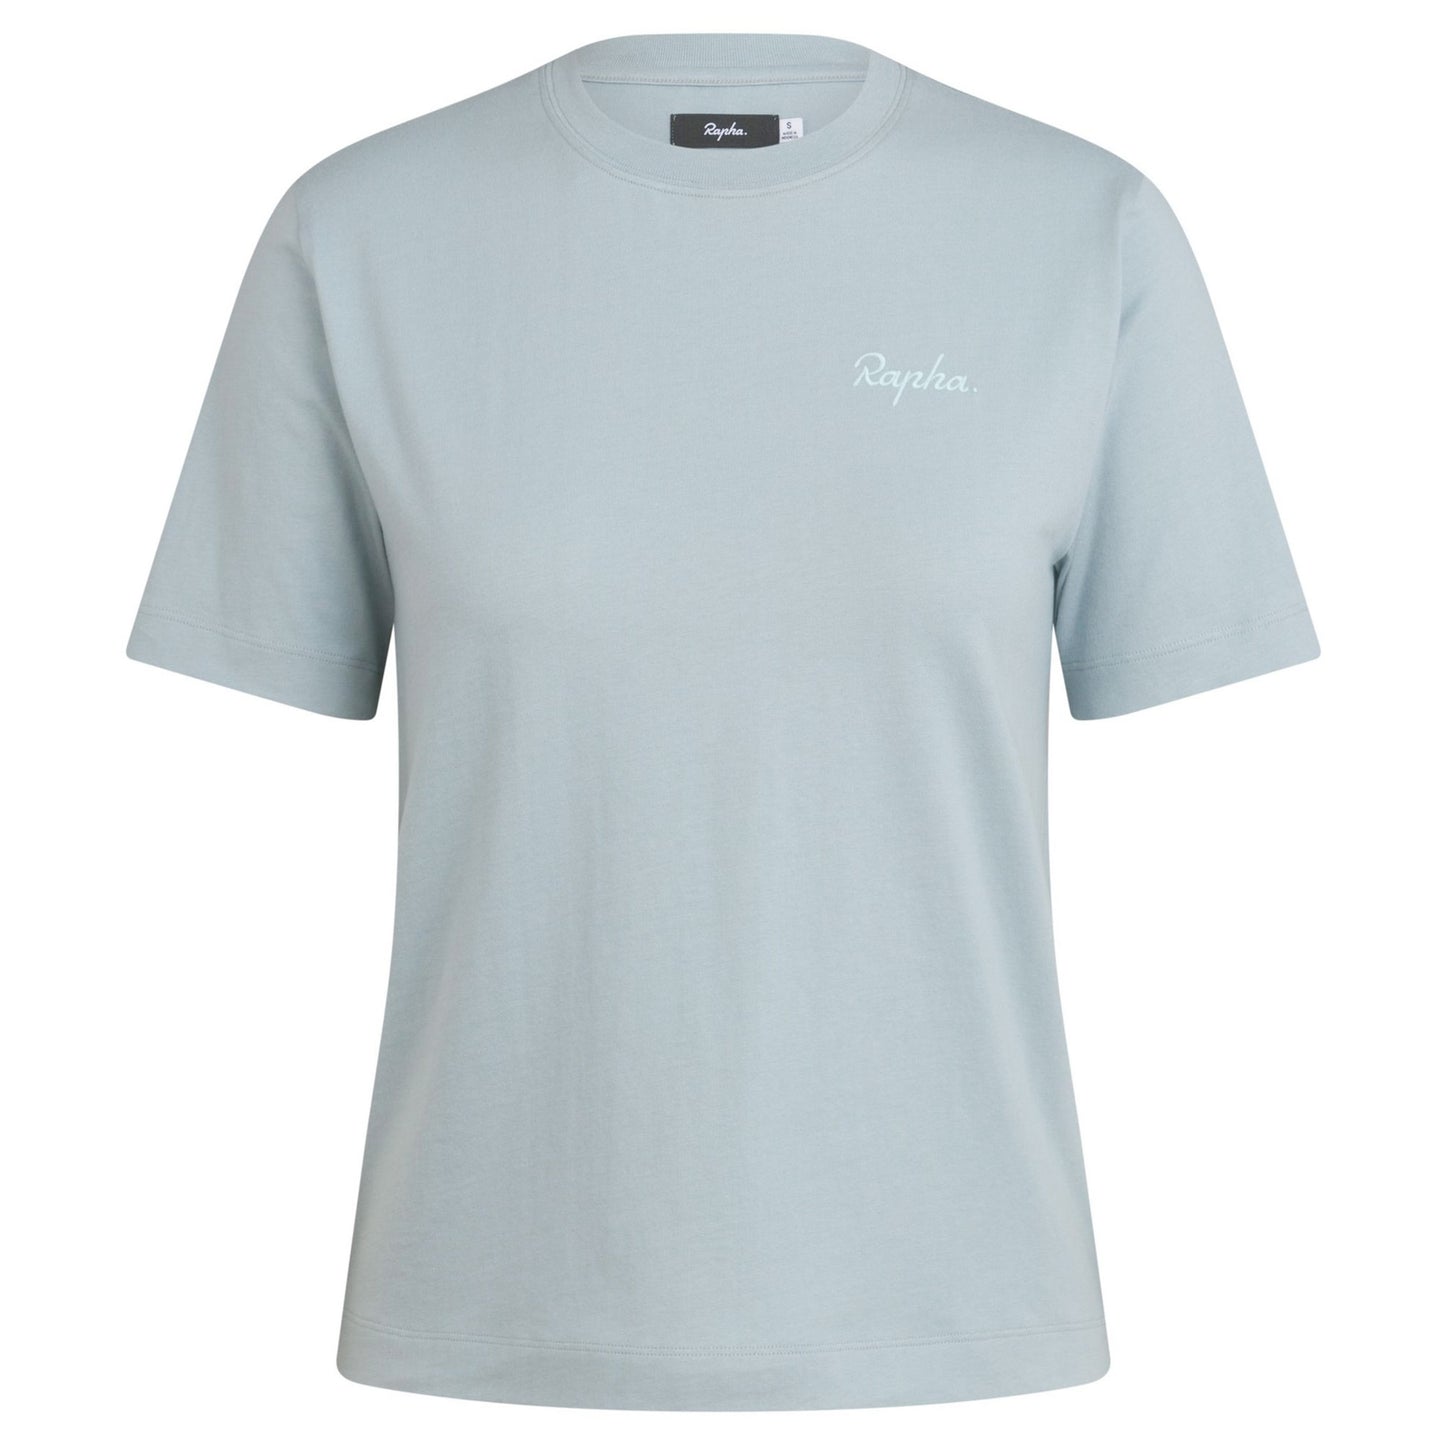 Rapha Women's Logo T-Shirt, Light Blue/Pale Blue